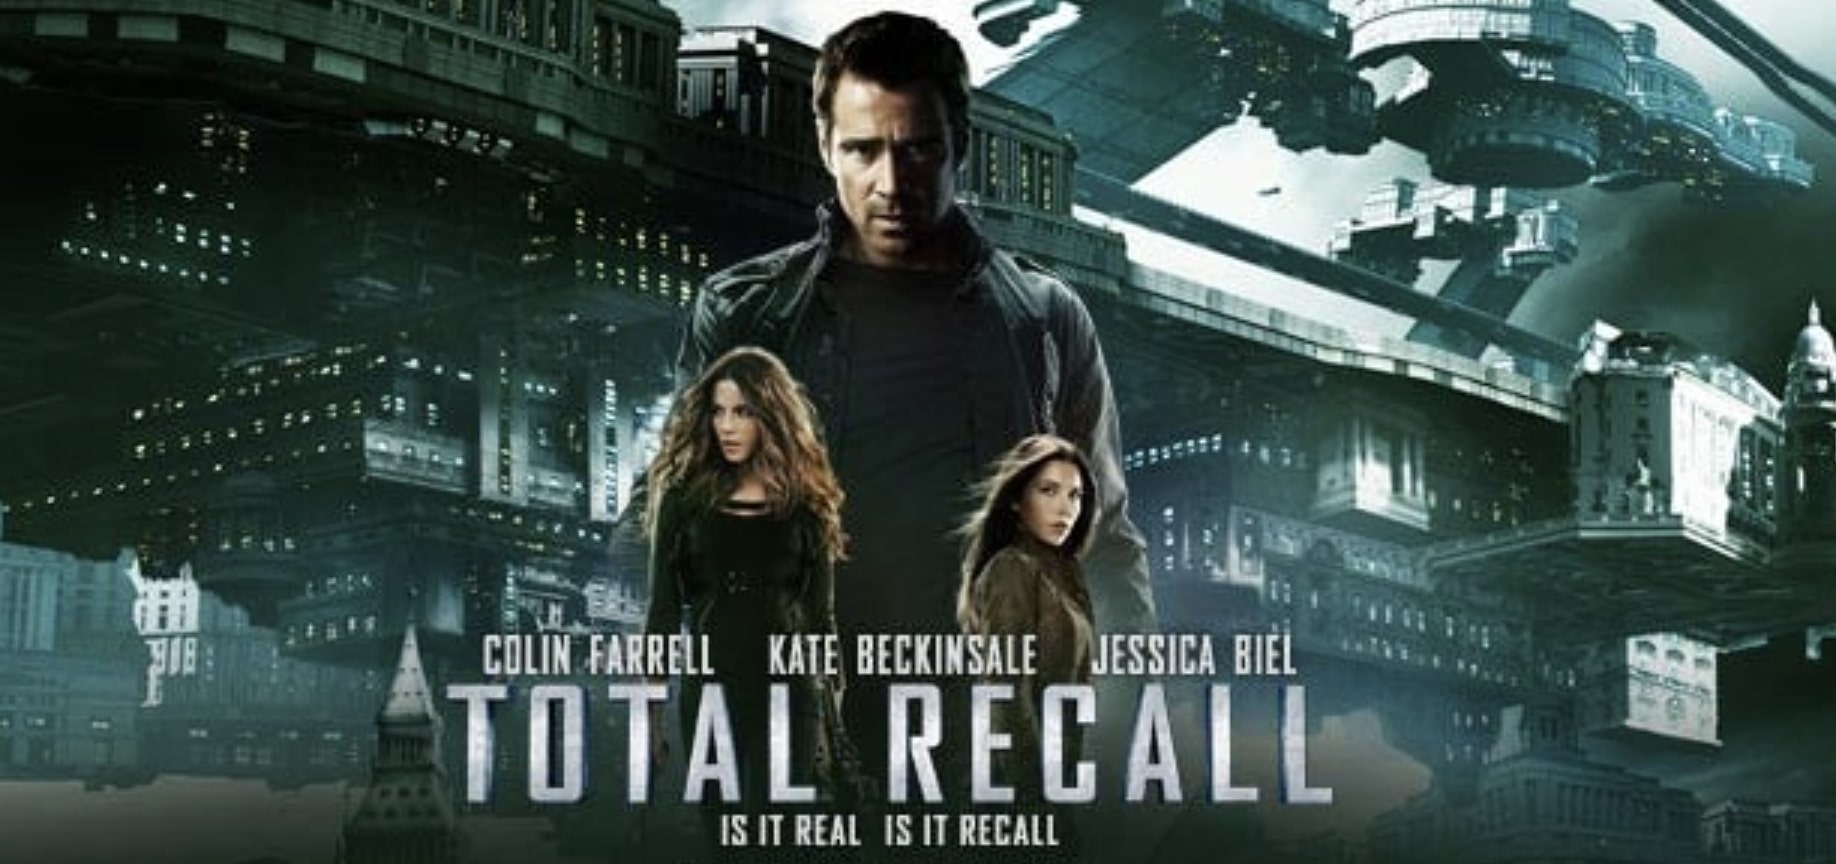 Total Recall (2012) ฅนทะลุโลก รีวิวหนังฝรั่ง